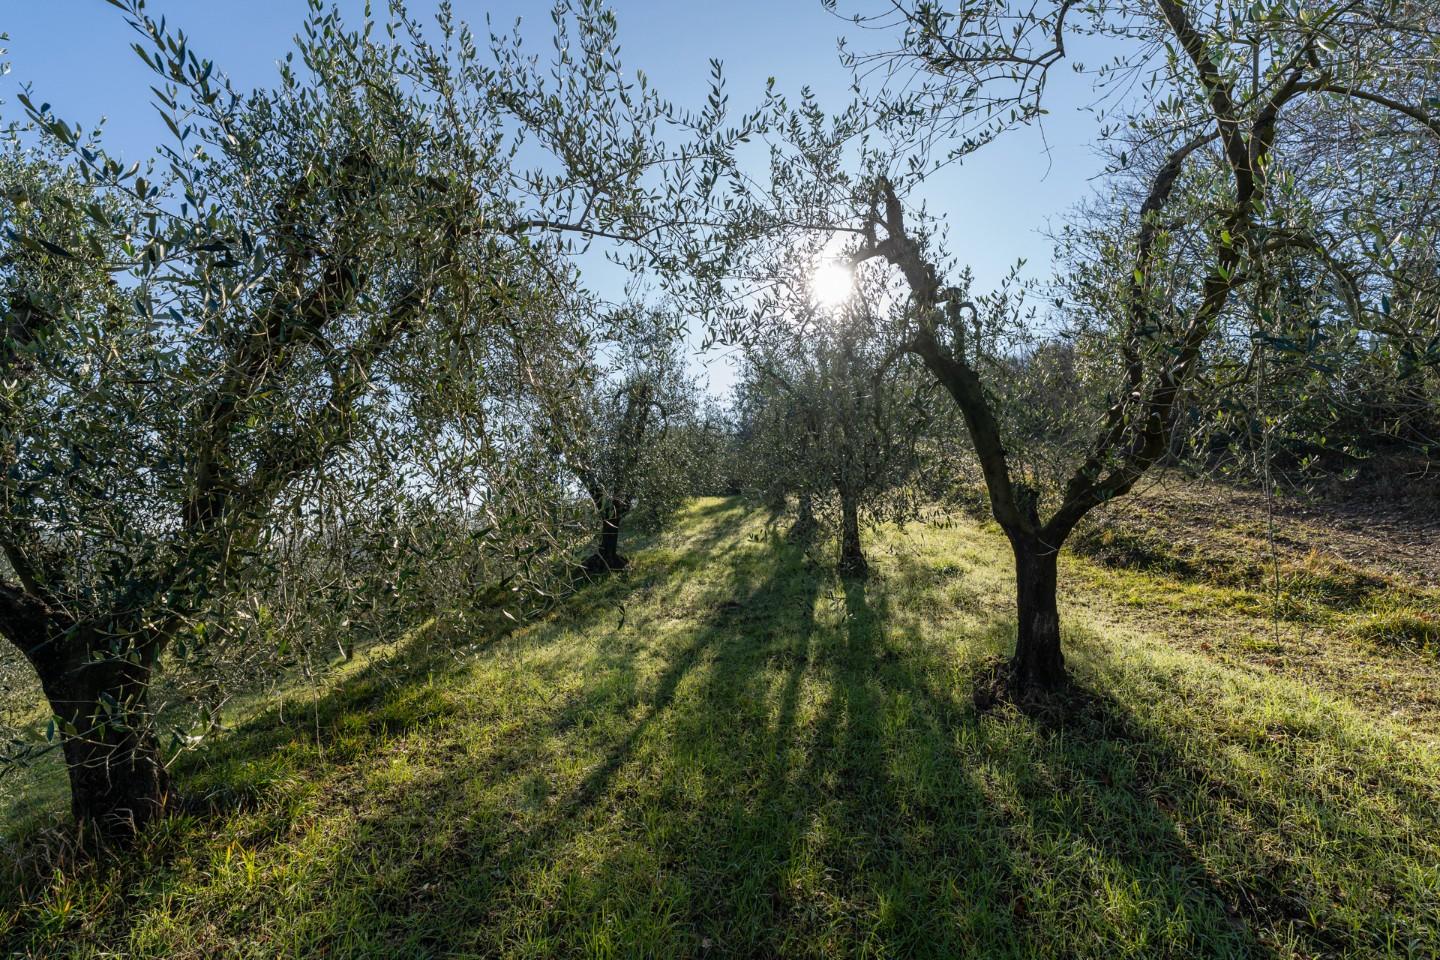 Terreno agricolo in vendita a Casciana Terme Lari (PI)